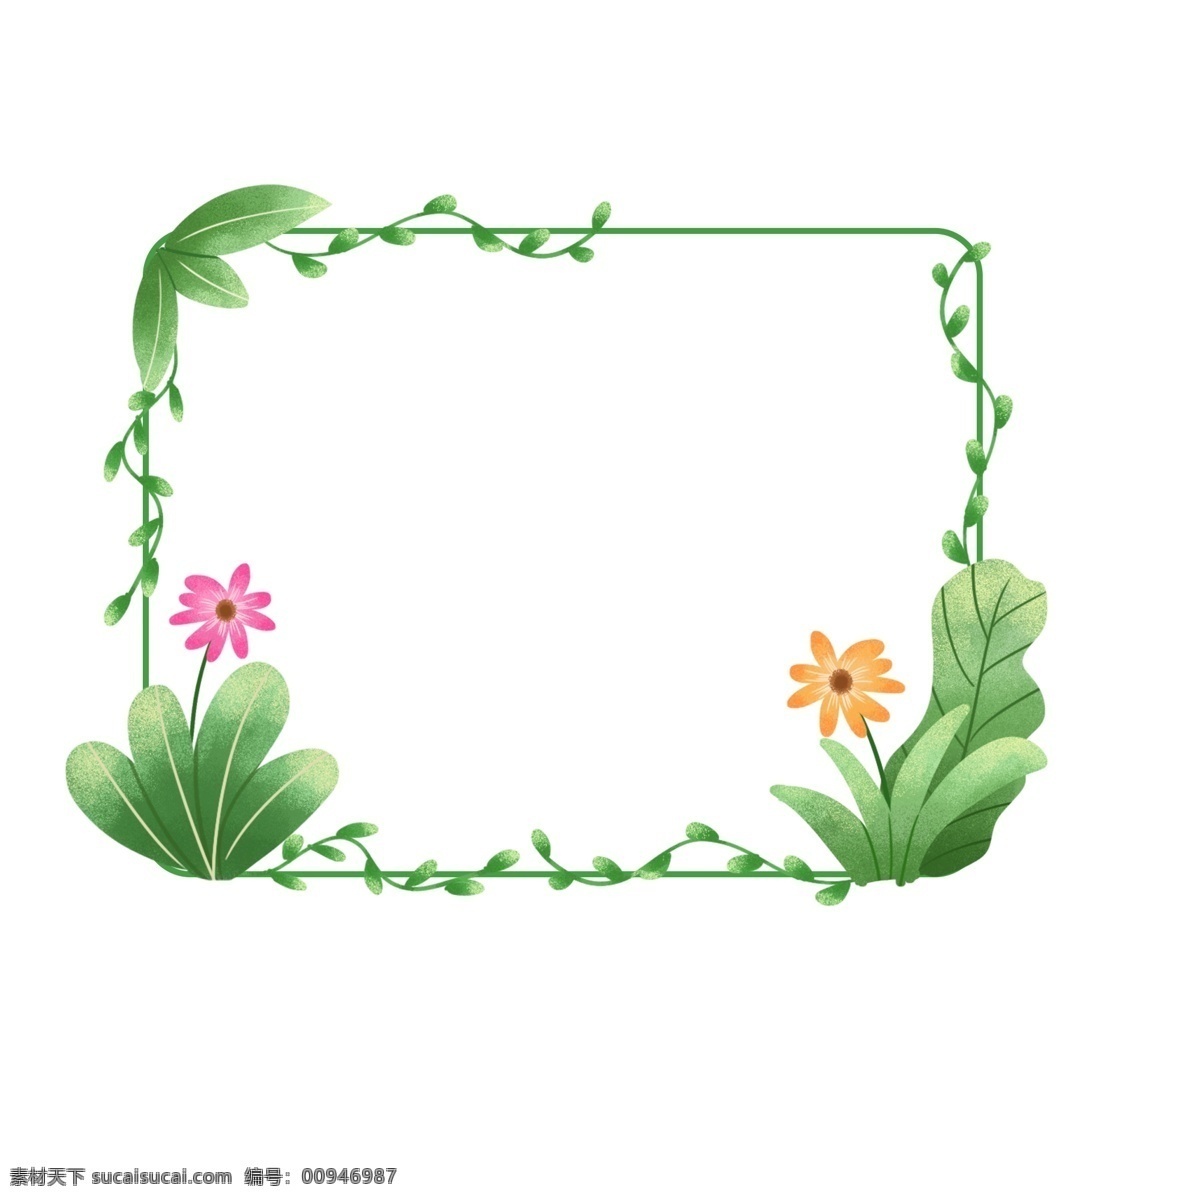 手绘 春天 绿色 清新 植物 鲜花 绿叶 边框 元素 手绘鲜花 手绘植物 手绘绿叶 植物元素 鲜花元素 植物边框